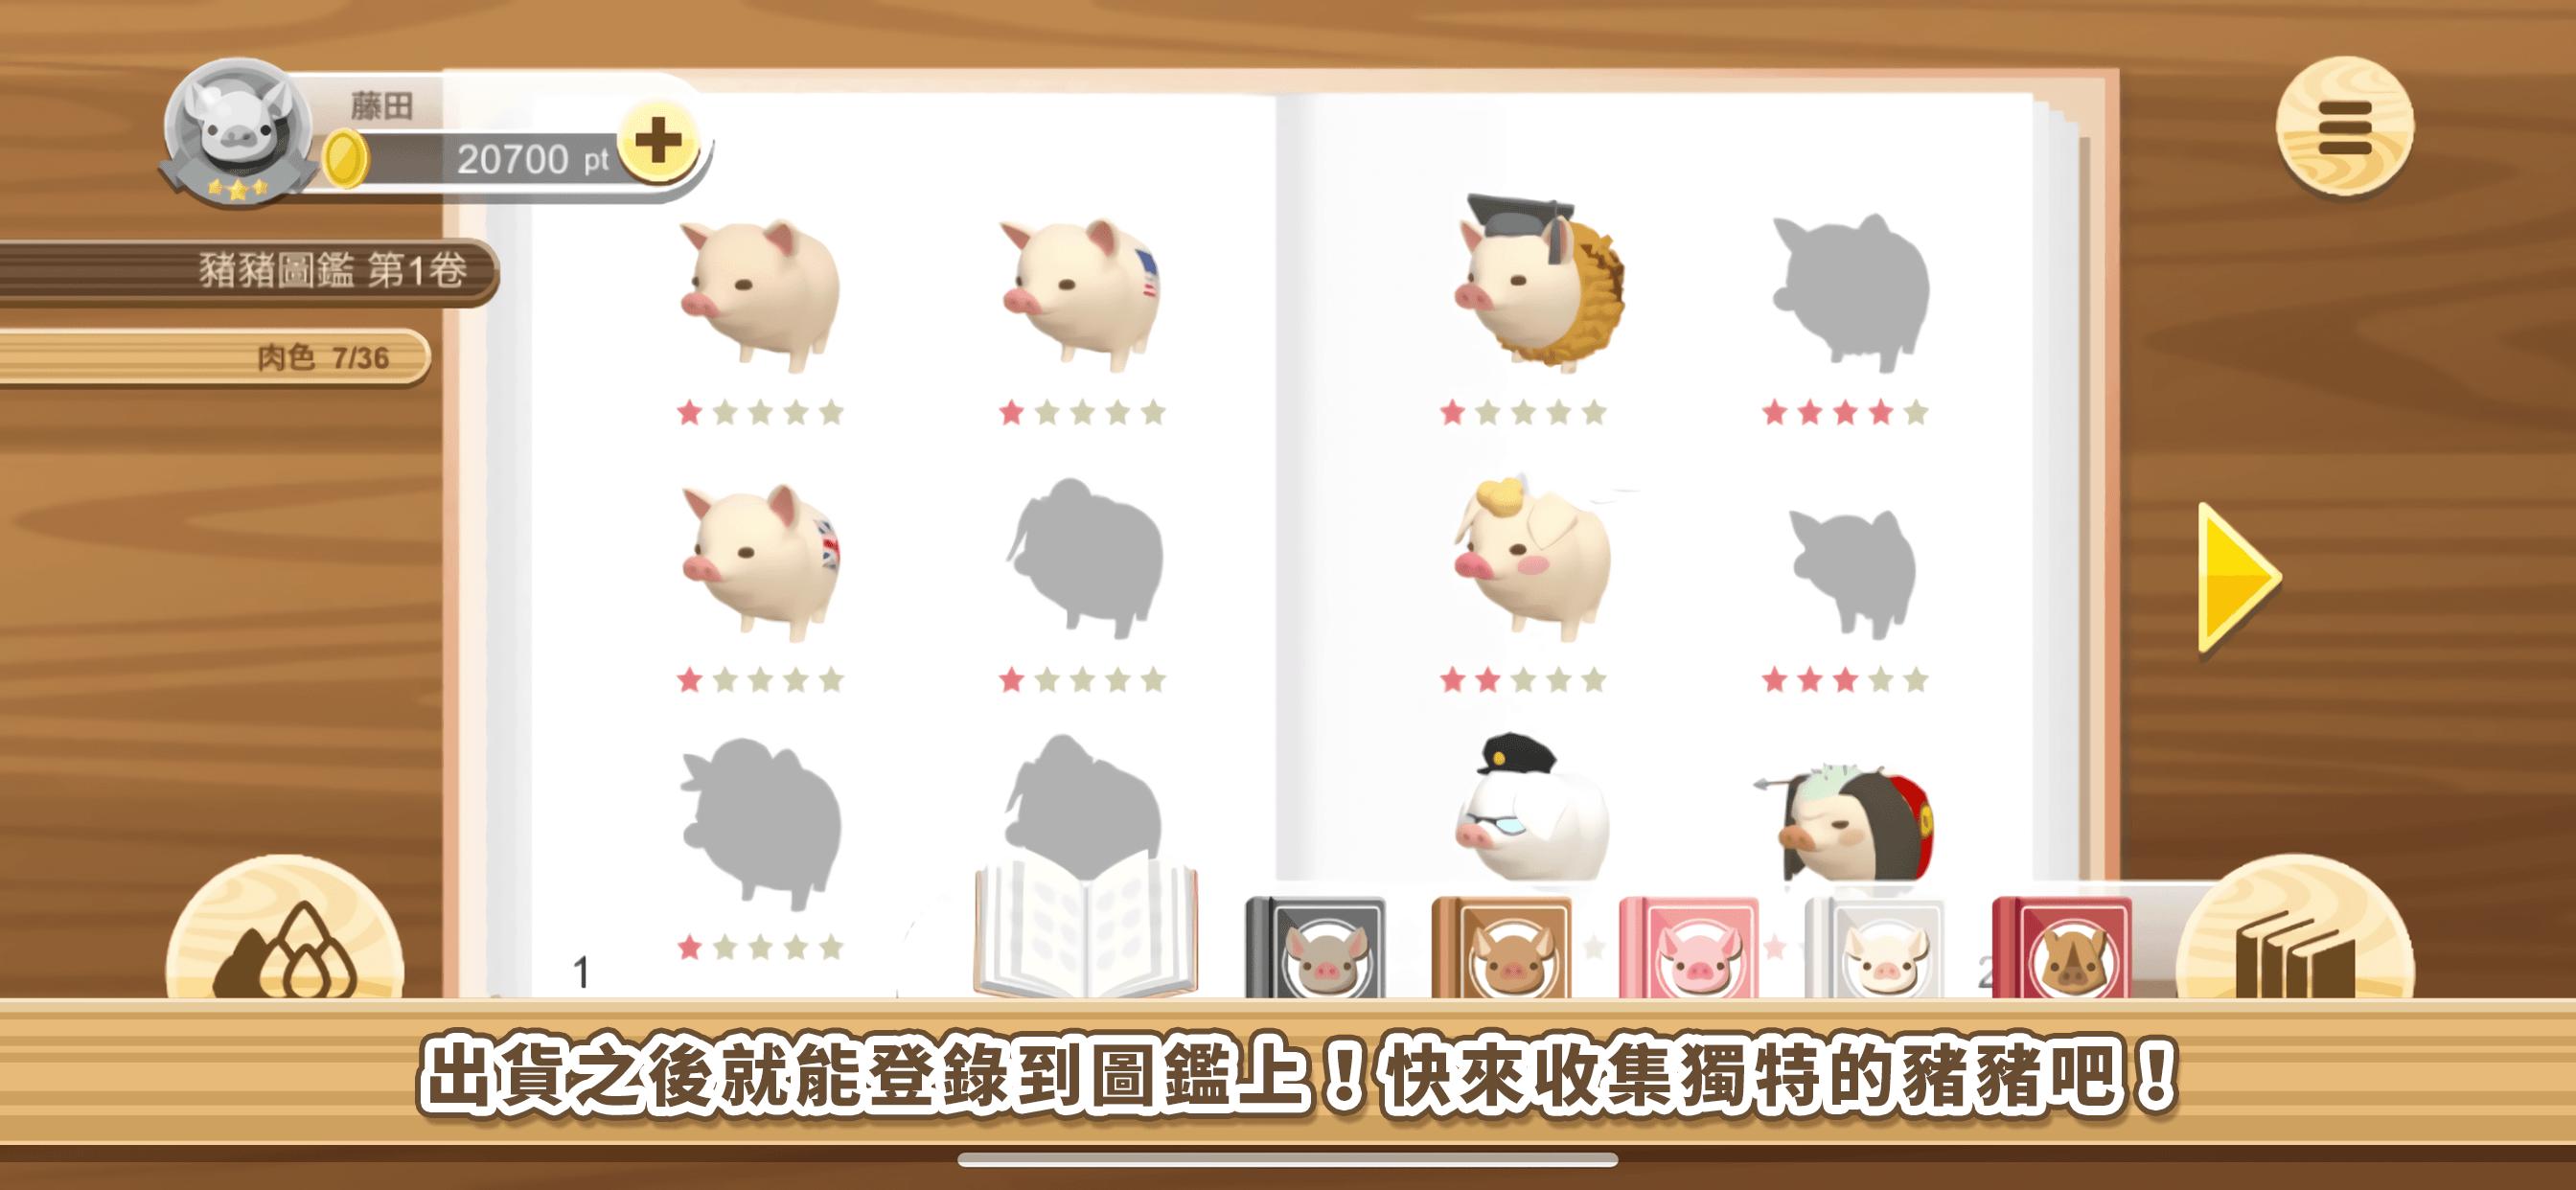 養豬場3D 4.03 Screenshot 6